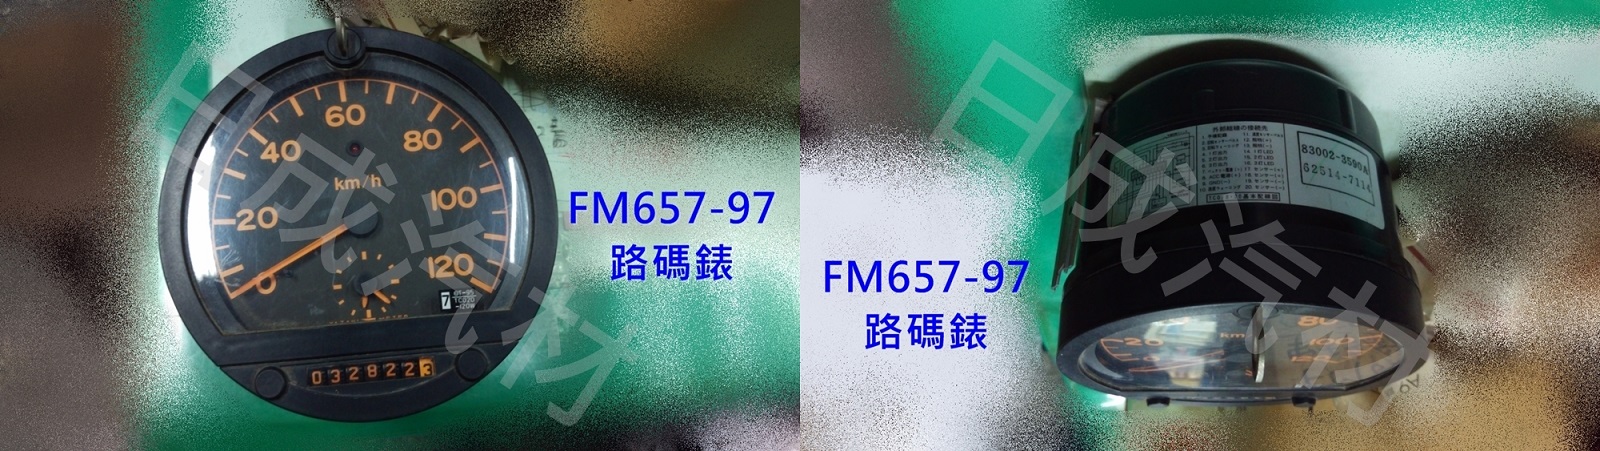 三菱中華FM657/FK617-97年里程記錄表(中古) - 關閉視窗 >> 可點按圖像